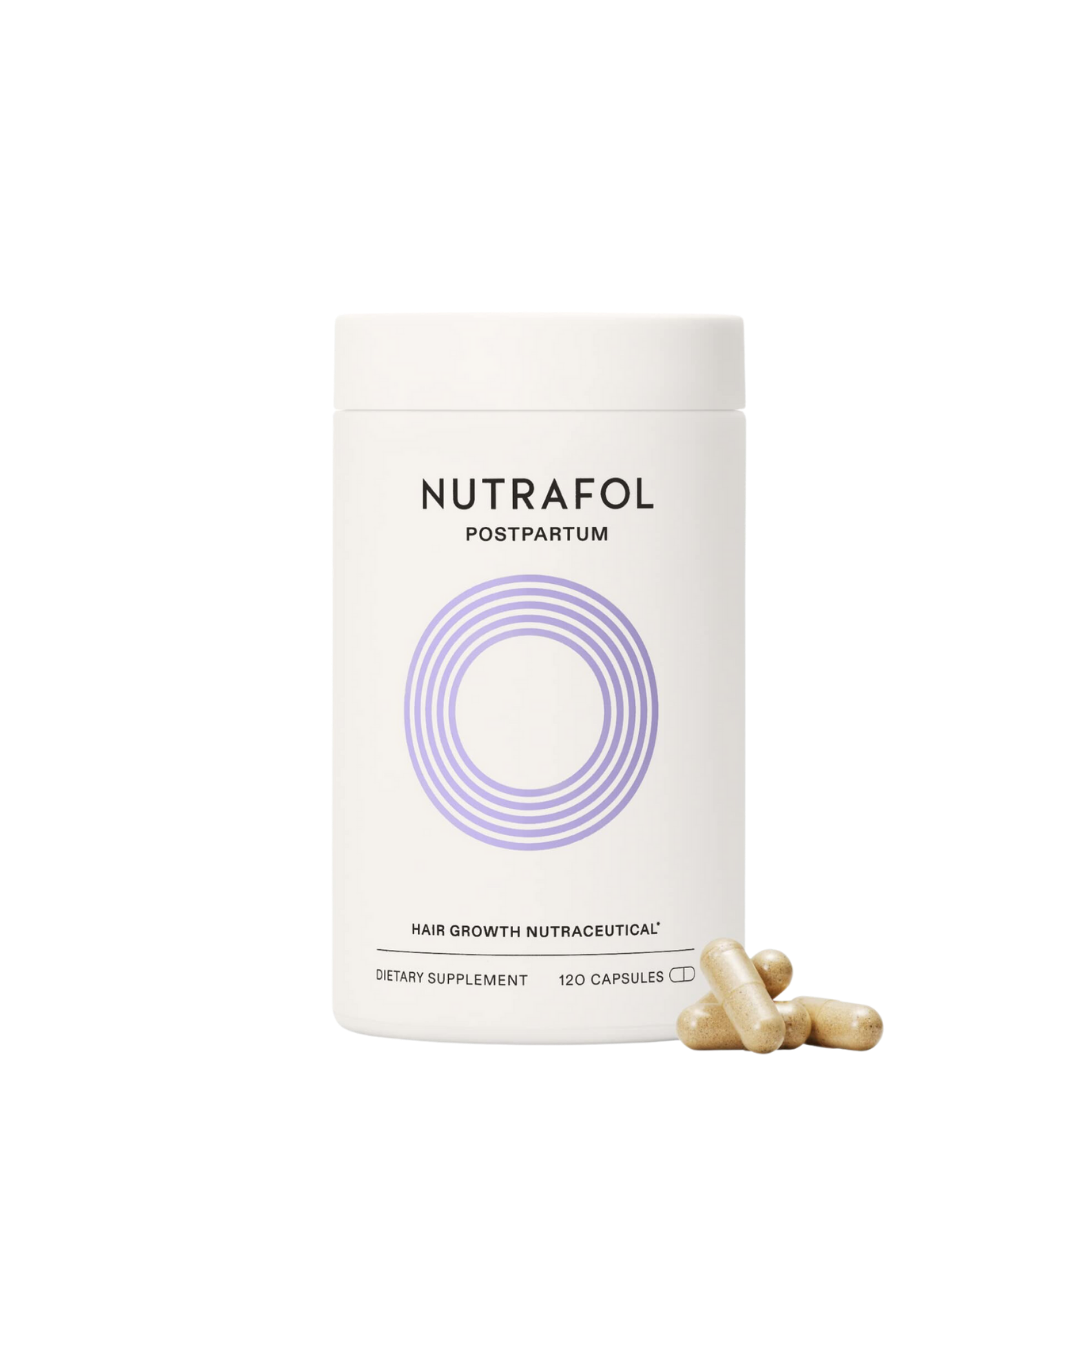 Nutrafol Women's Postpartum Hair Growth Supplements - 3 Month Supply